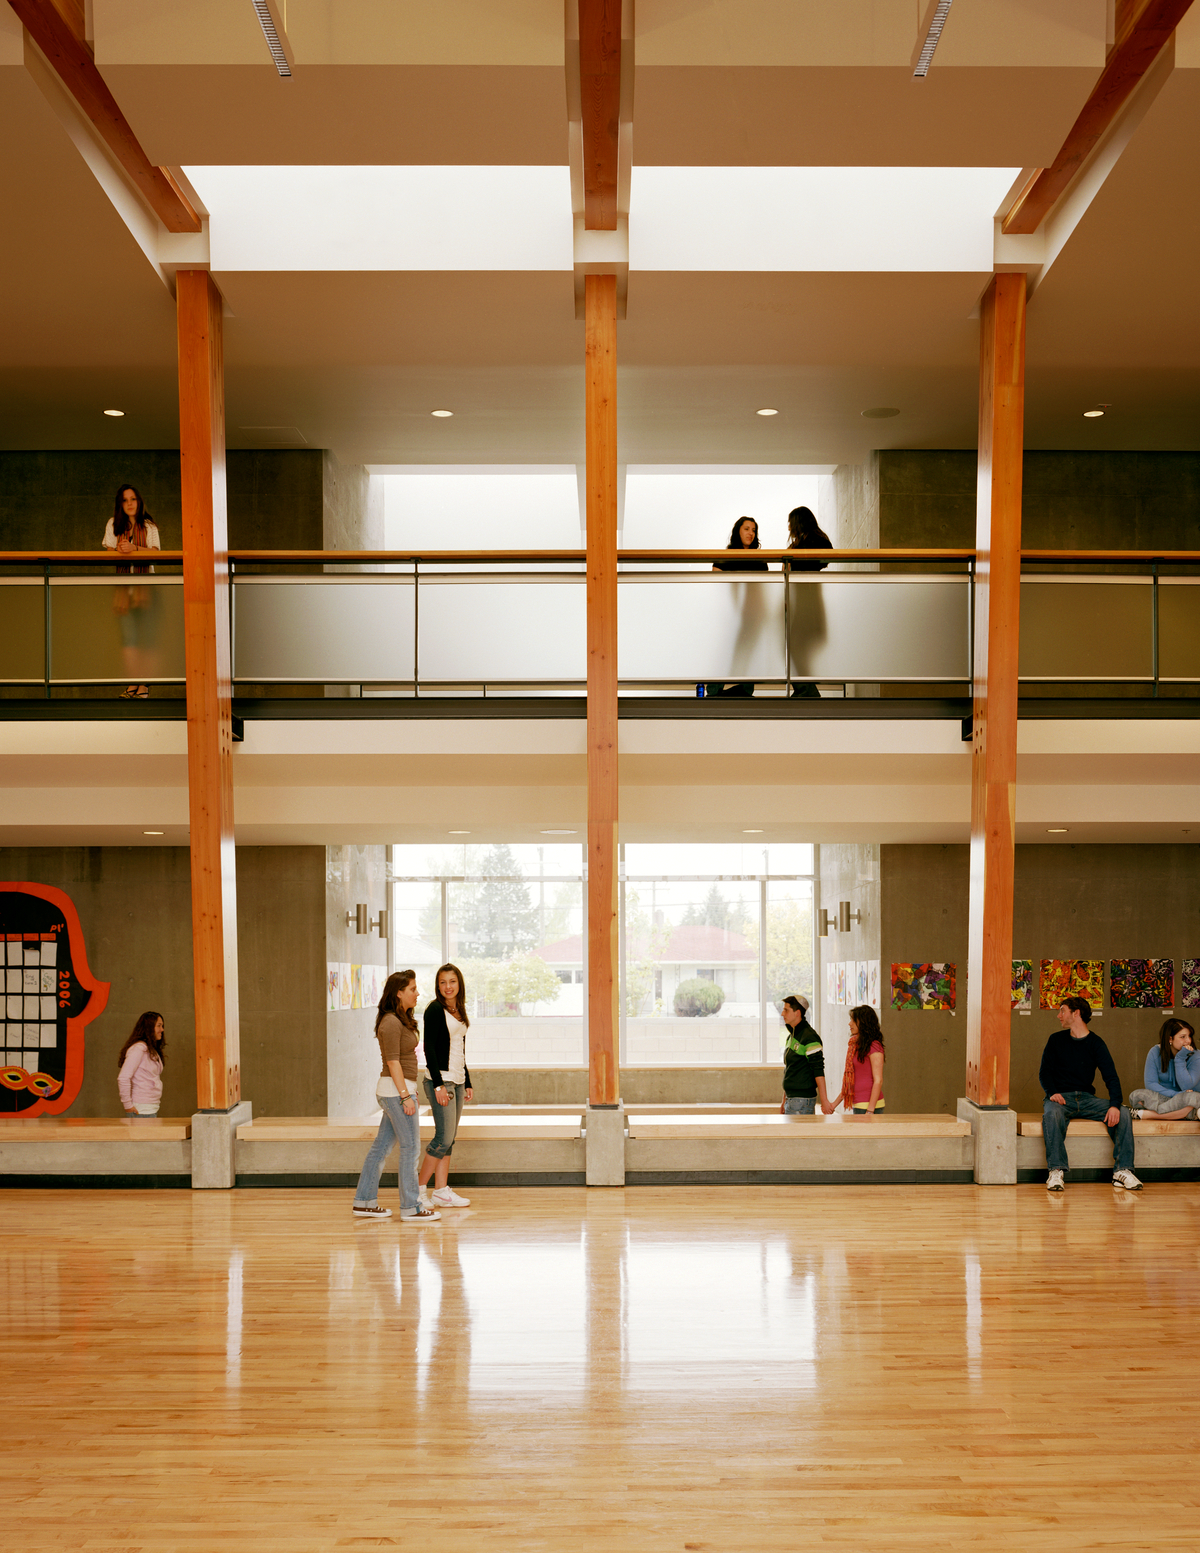 大卫王高中的室内白天视图，展示了中央多功能避难所内的学生，木地板和暴露的胶合层压木材(胶合木)横梁和柱子